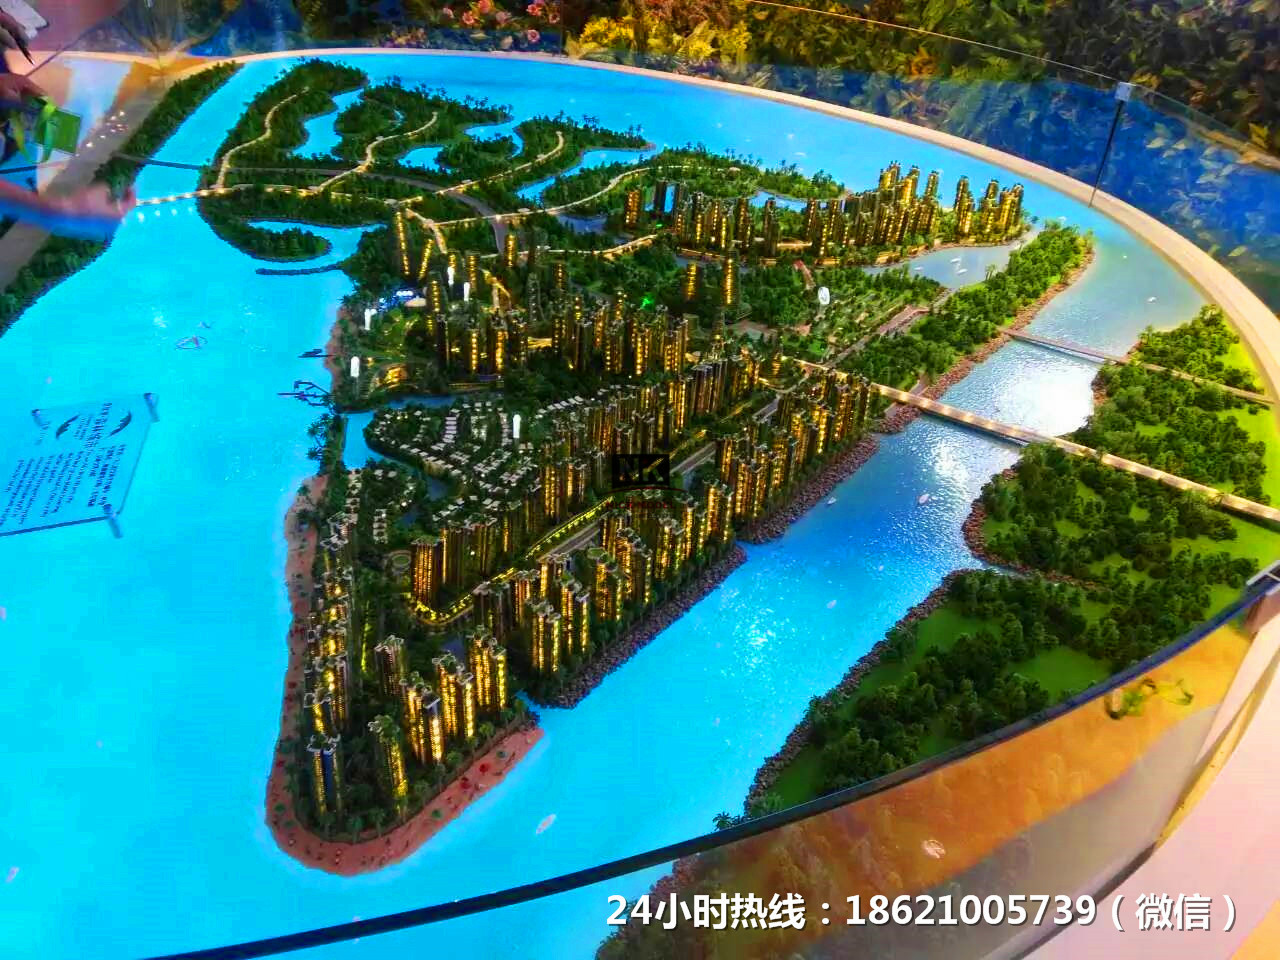 上海沙盤模型公司哪家好